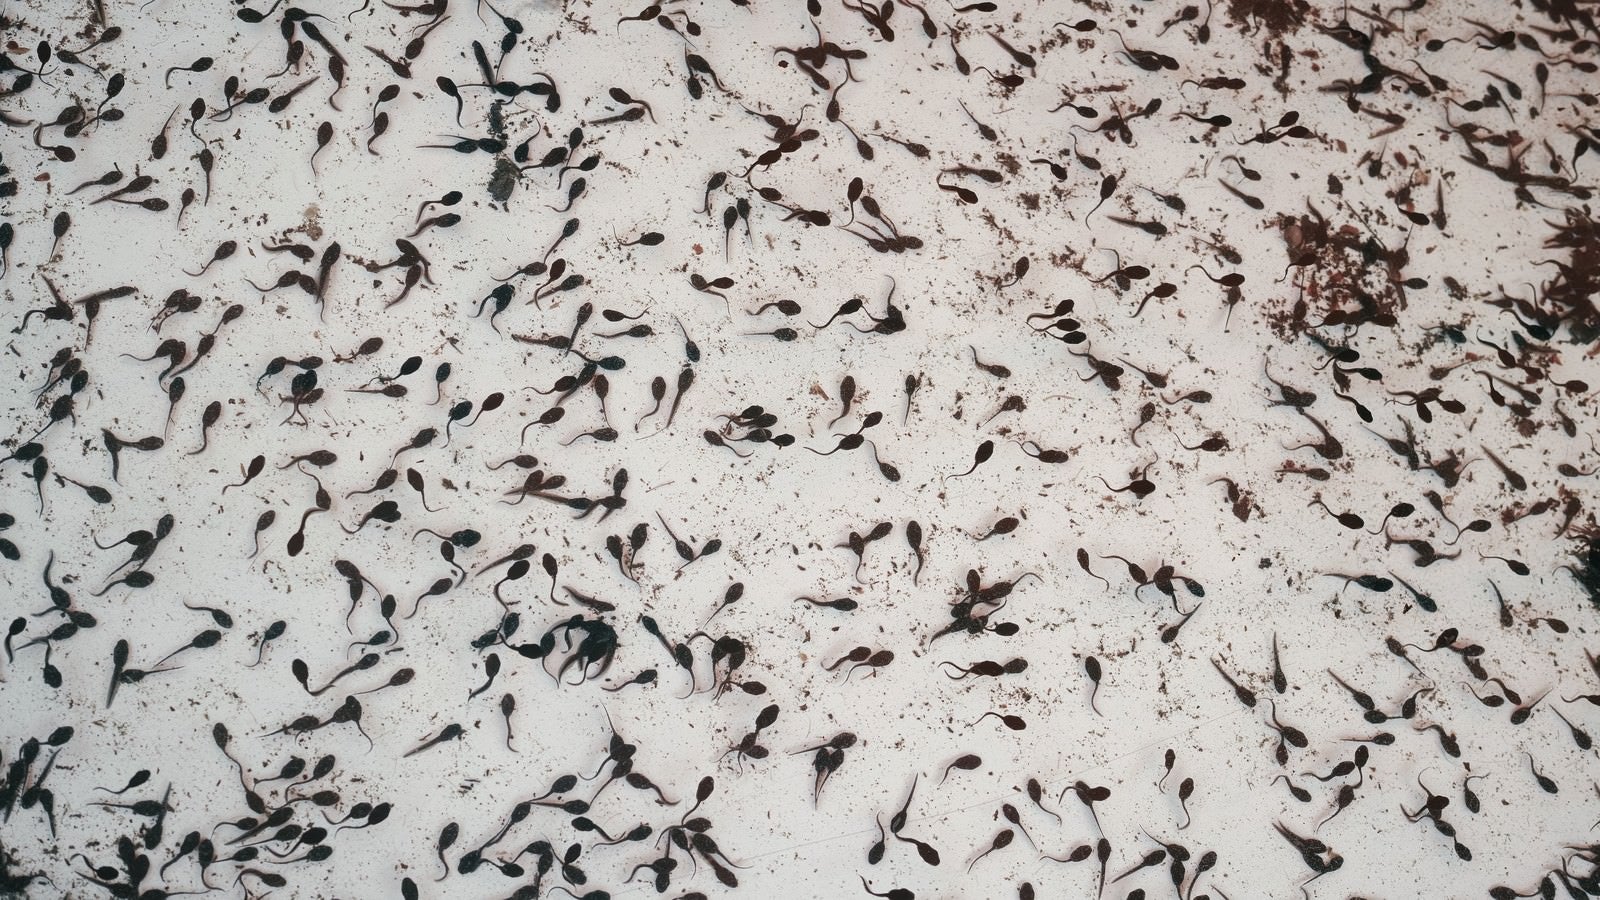 「水槽に入ったオタマジャクシの群れ」の写真